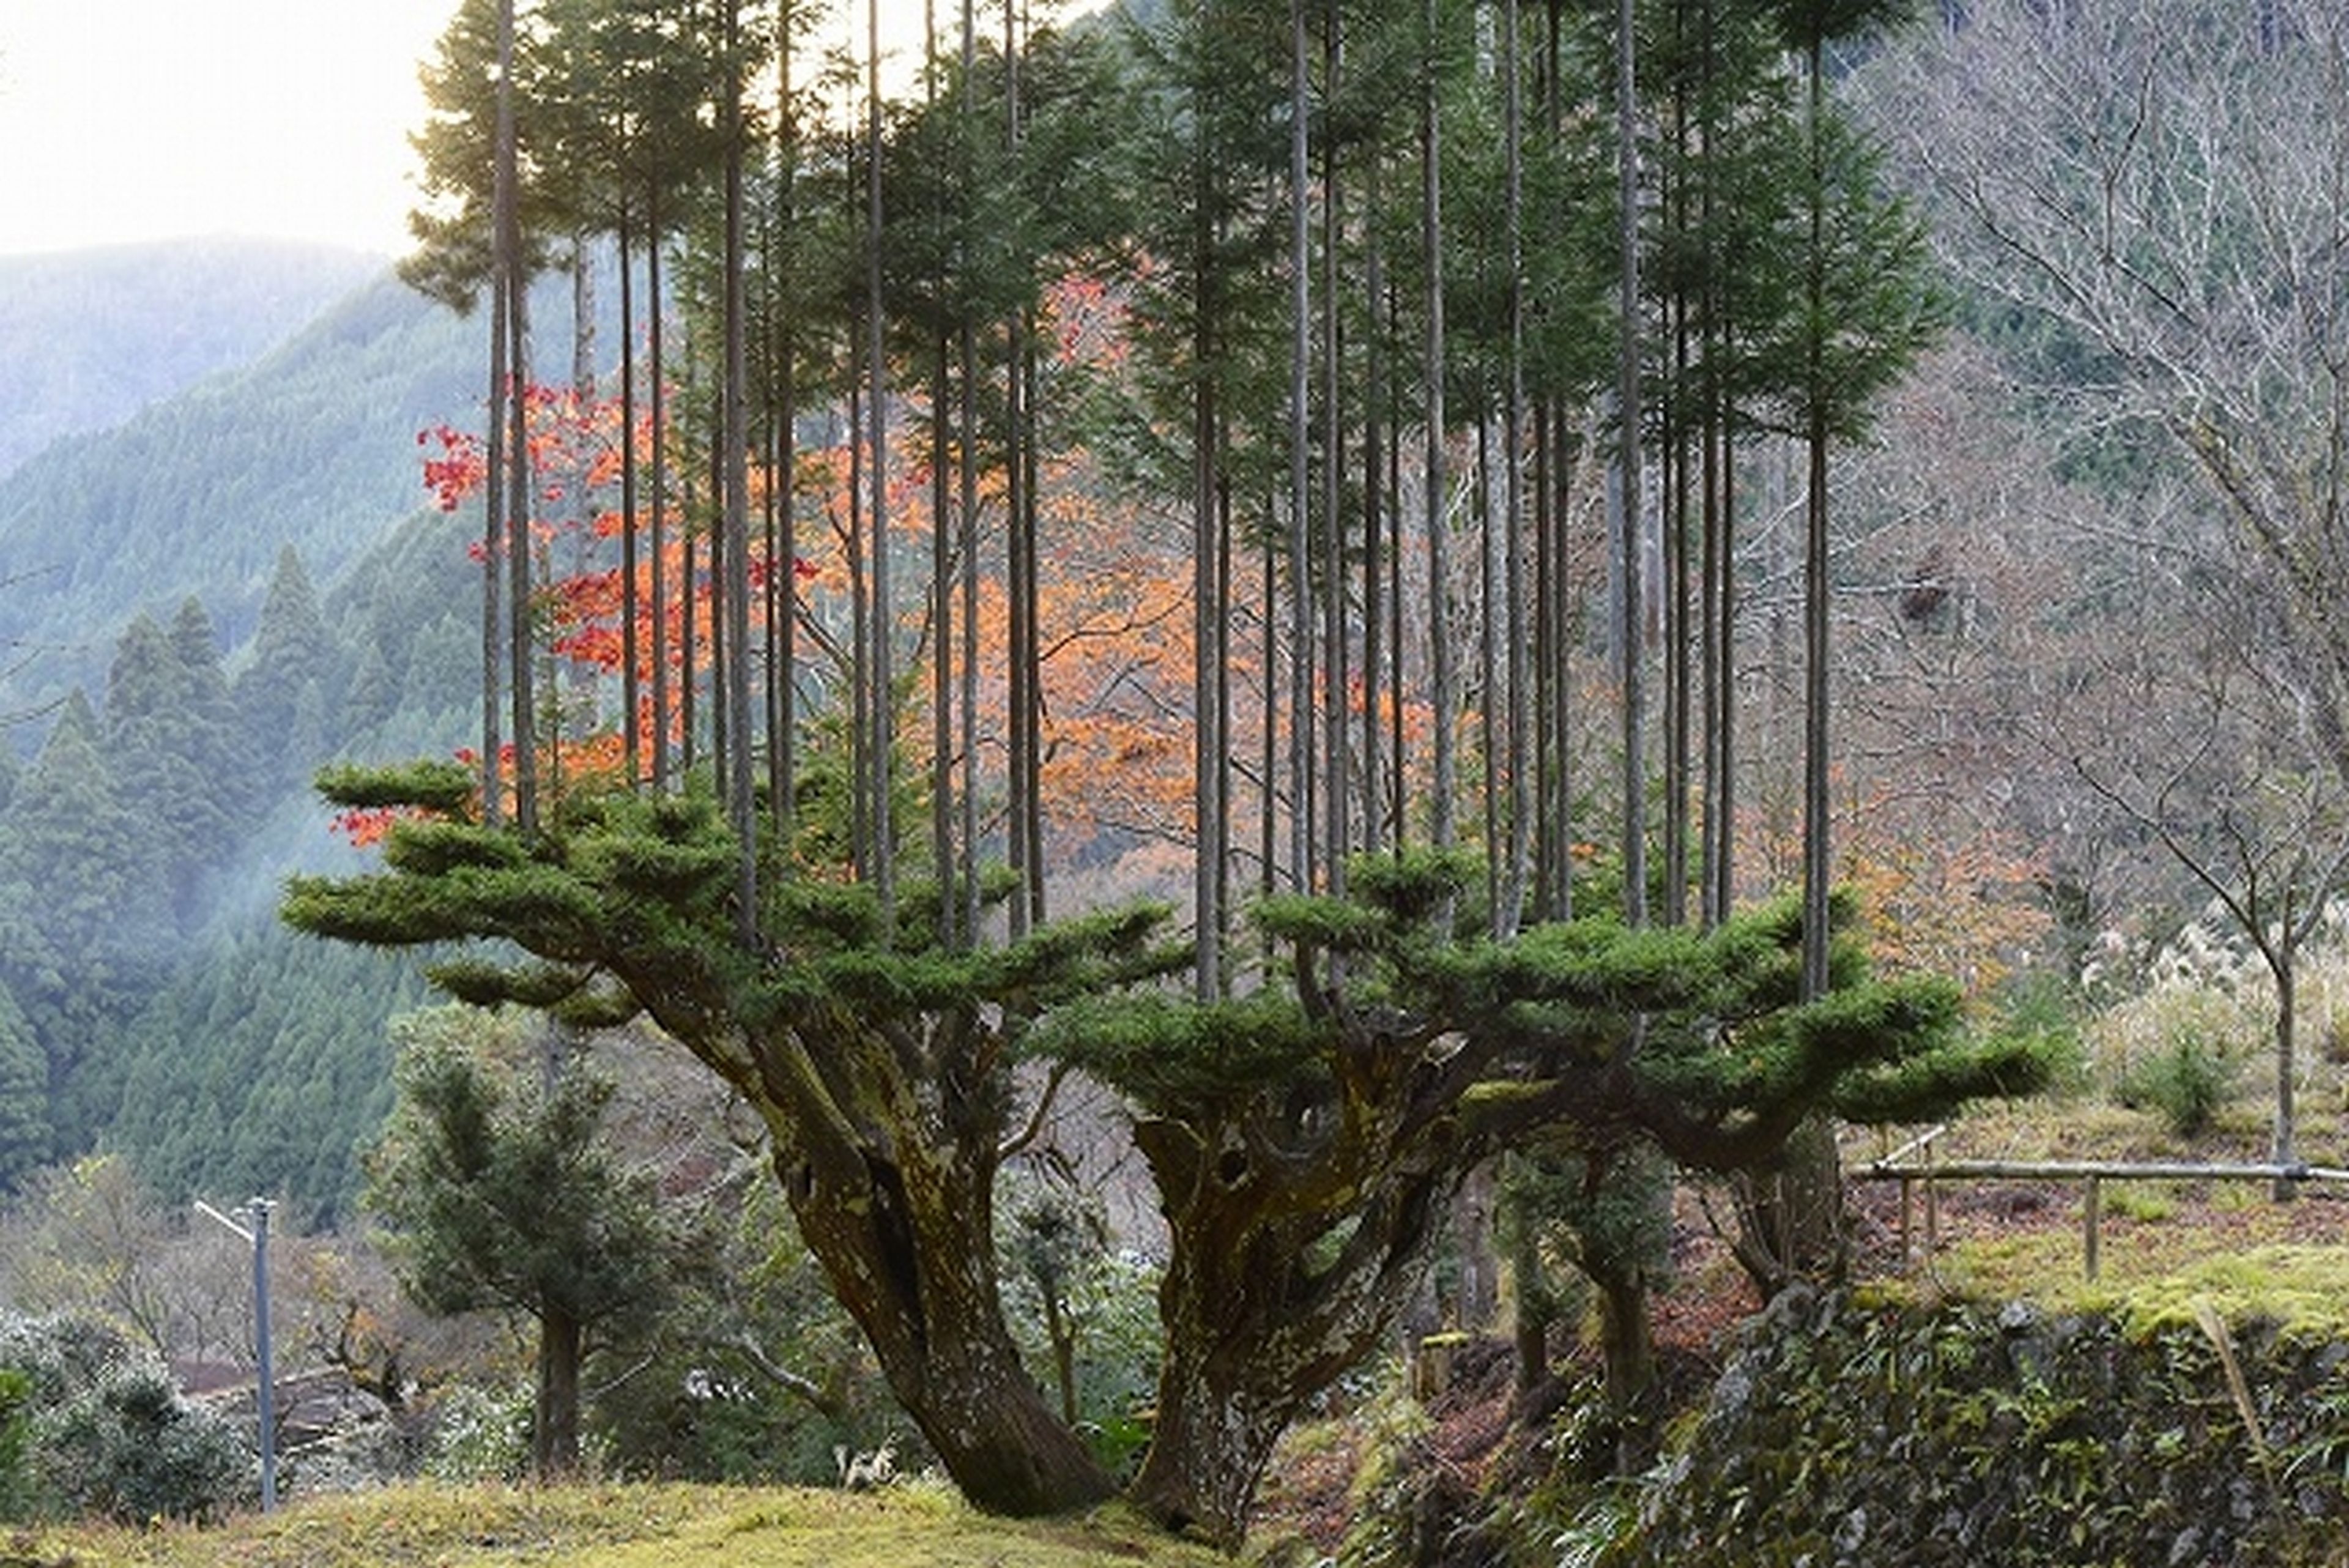 Daisugi, la técnica japonesa con 600 años de antigüedad para cultivar madera sin cortar los árboles